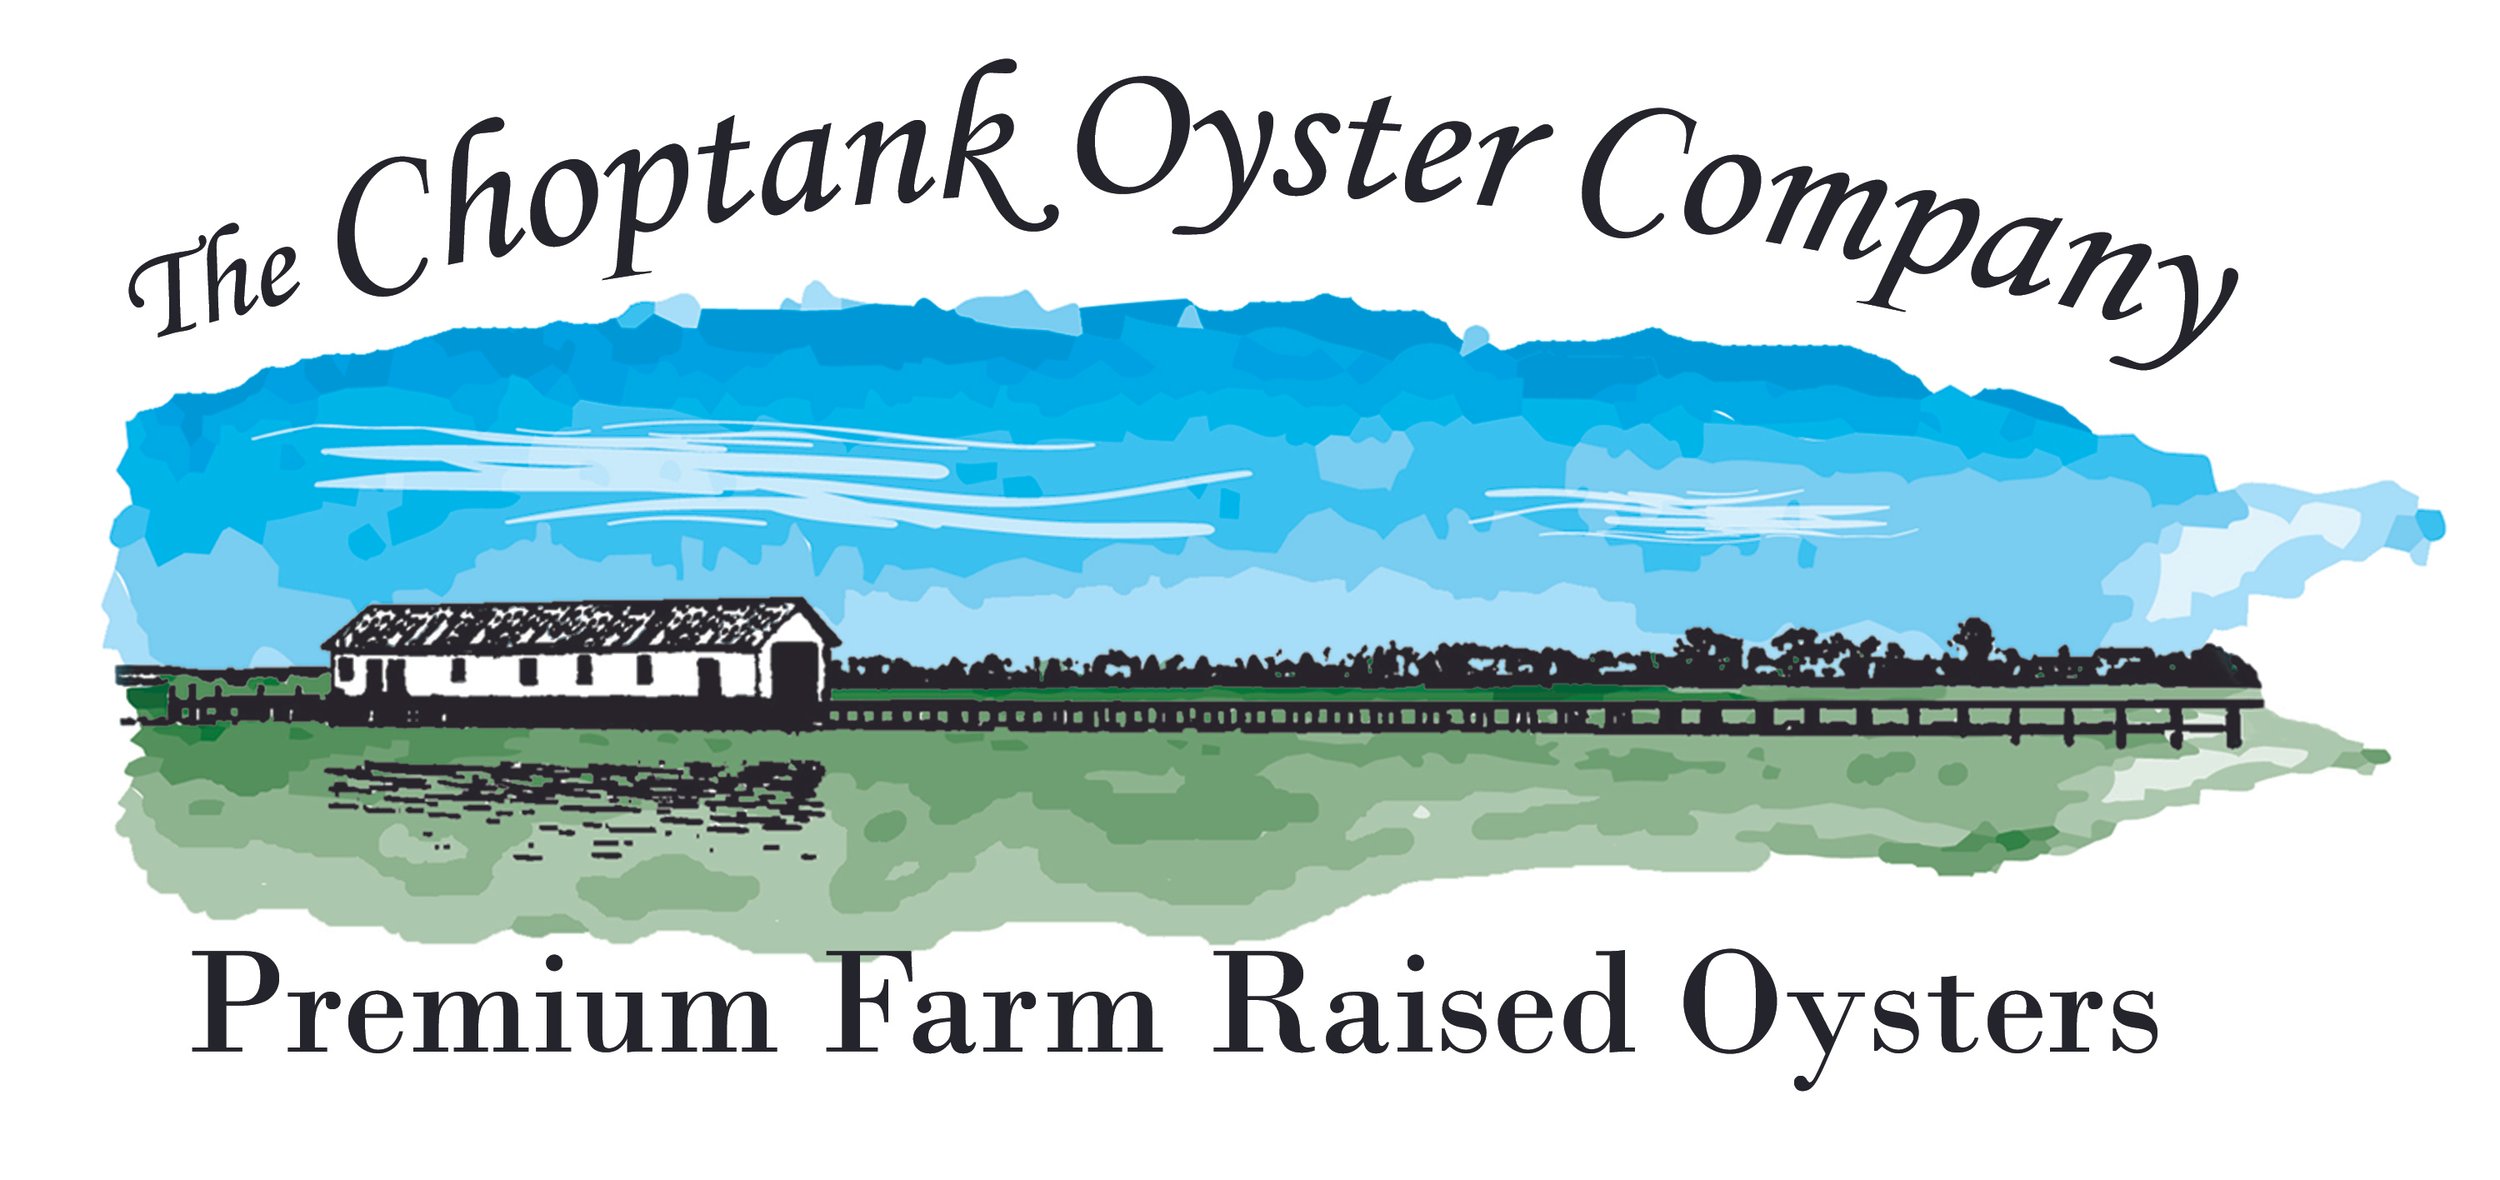 Choptank Oyster Co.jpg